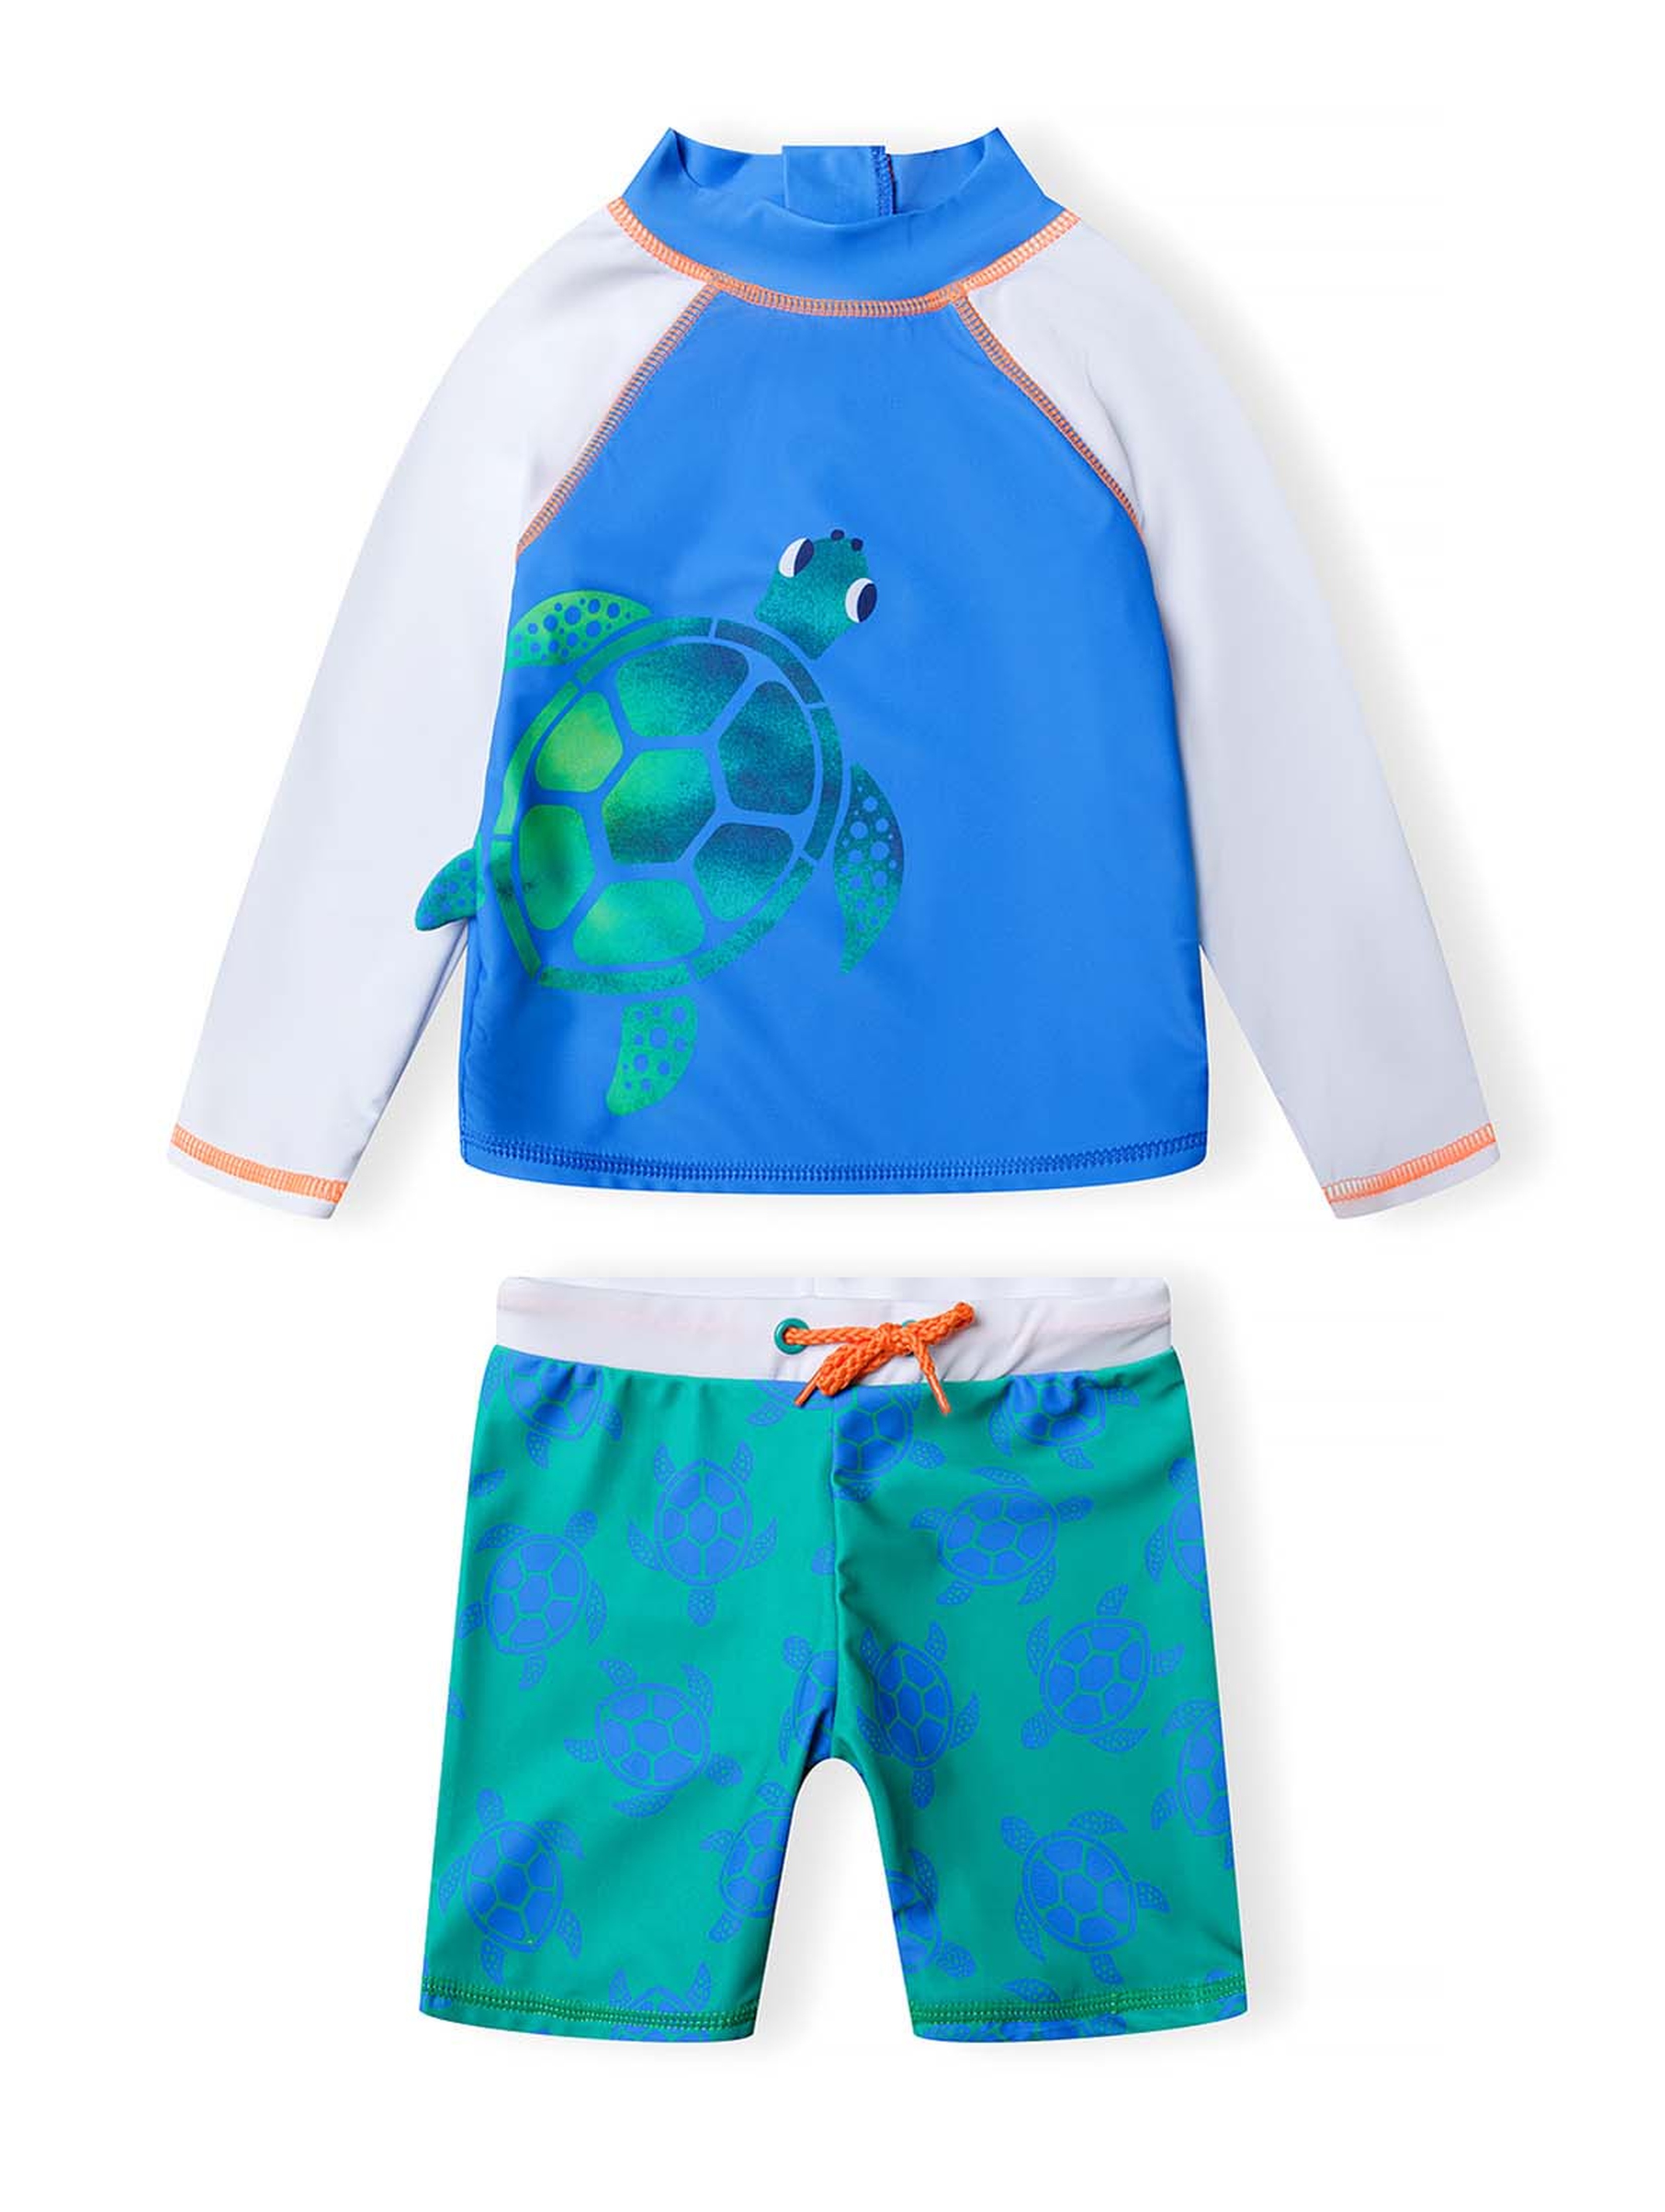 Strój kąpielowy z filtrem UV- koszulka z żółwiem i kąpielówki